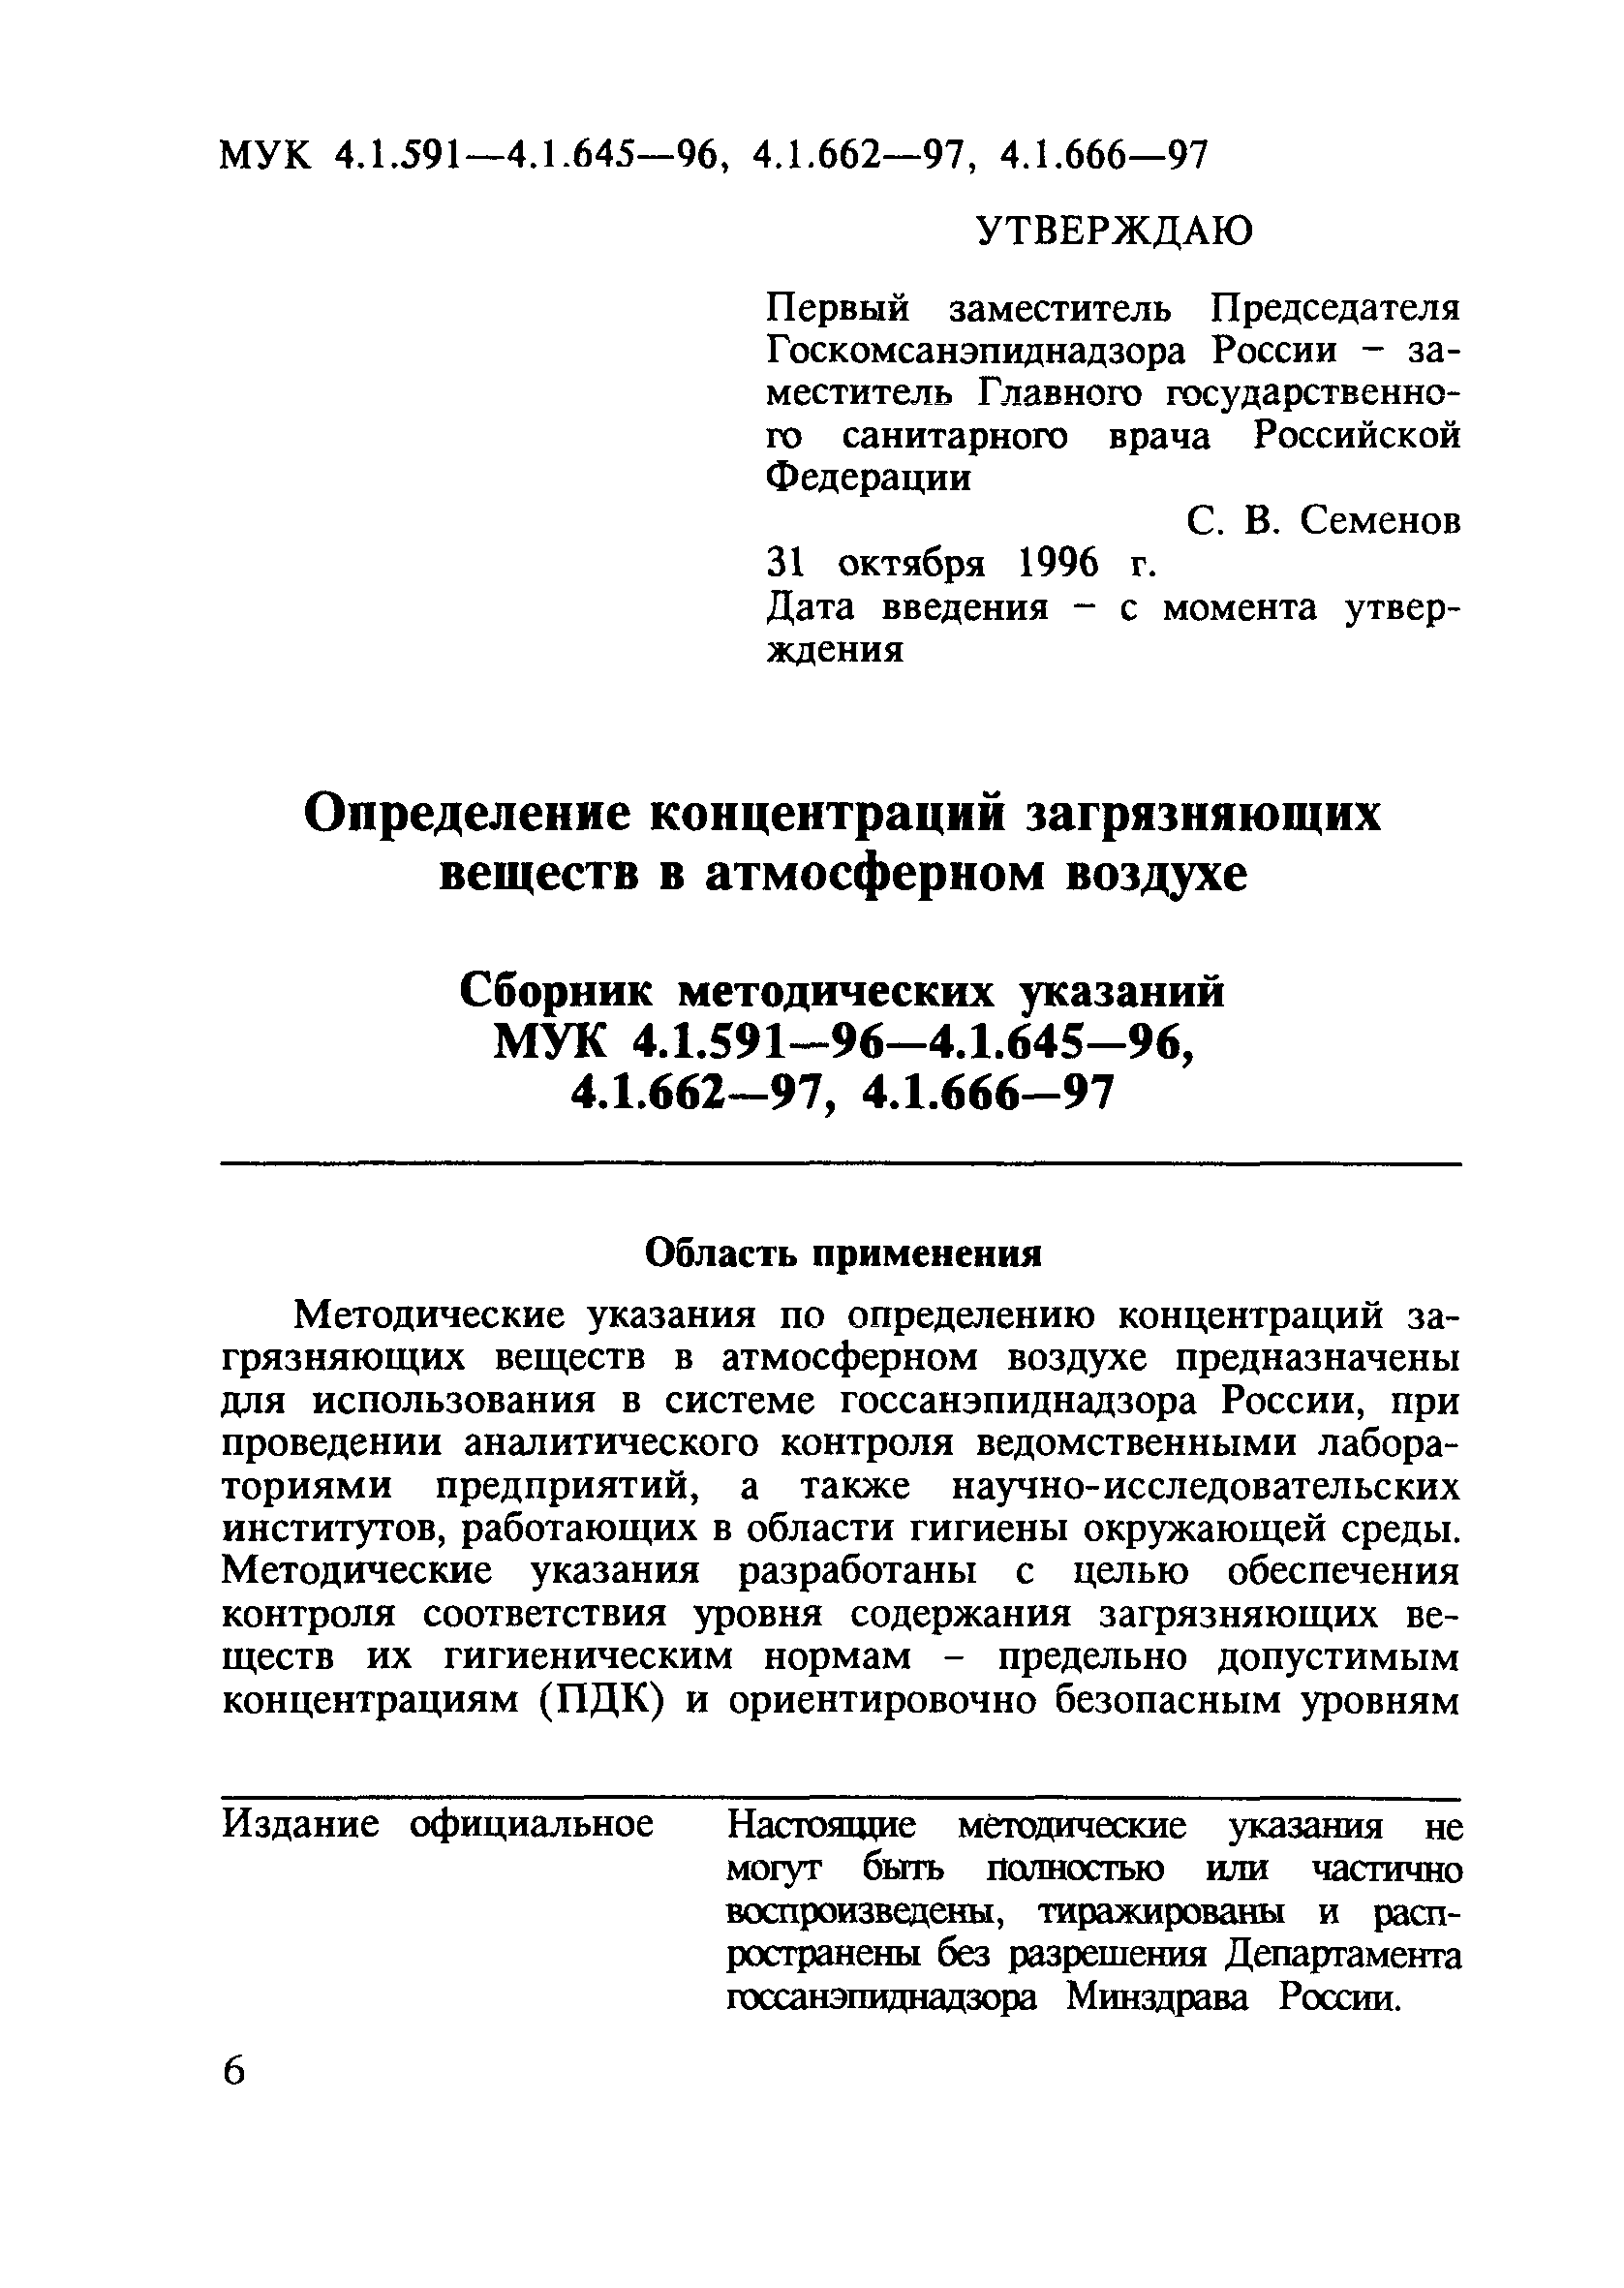 МУК 4.1.615-96